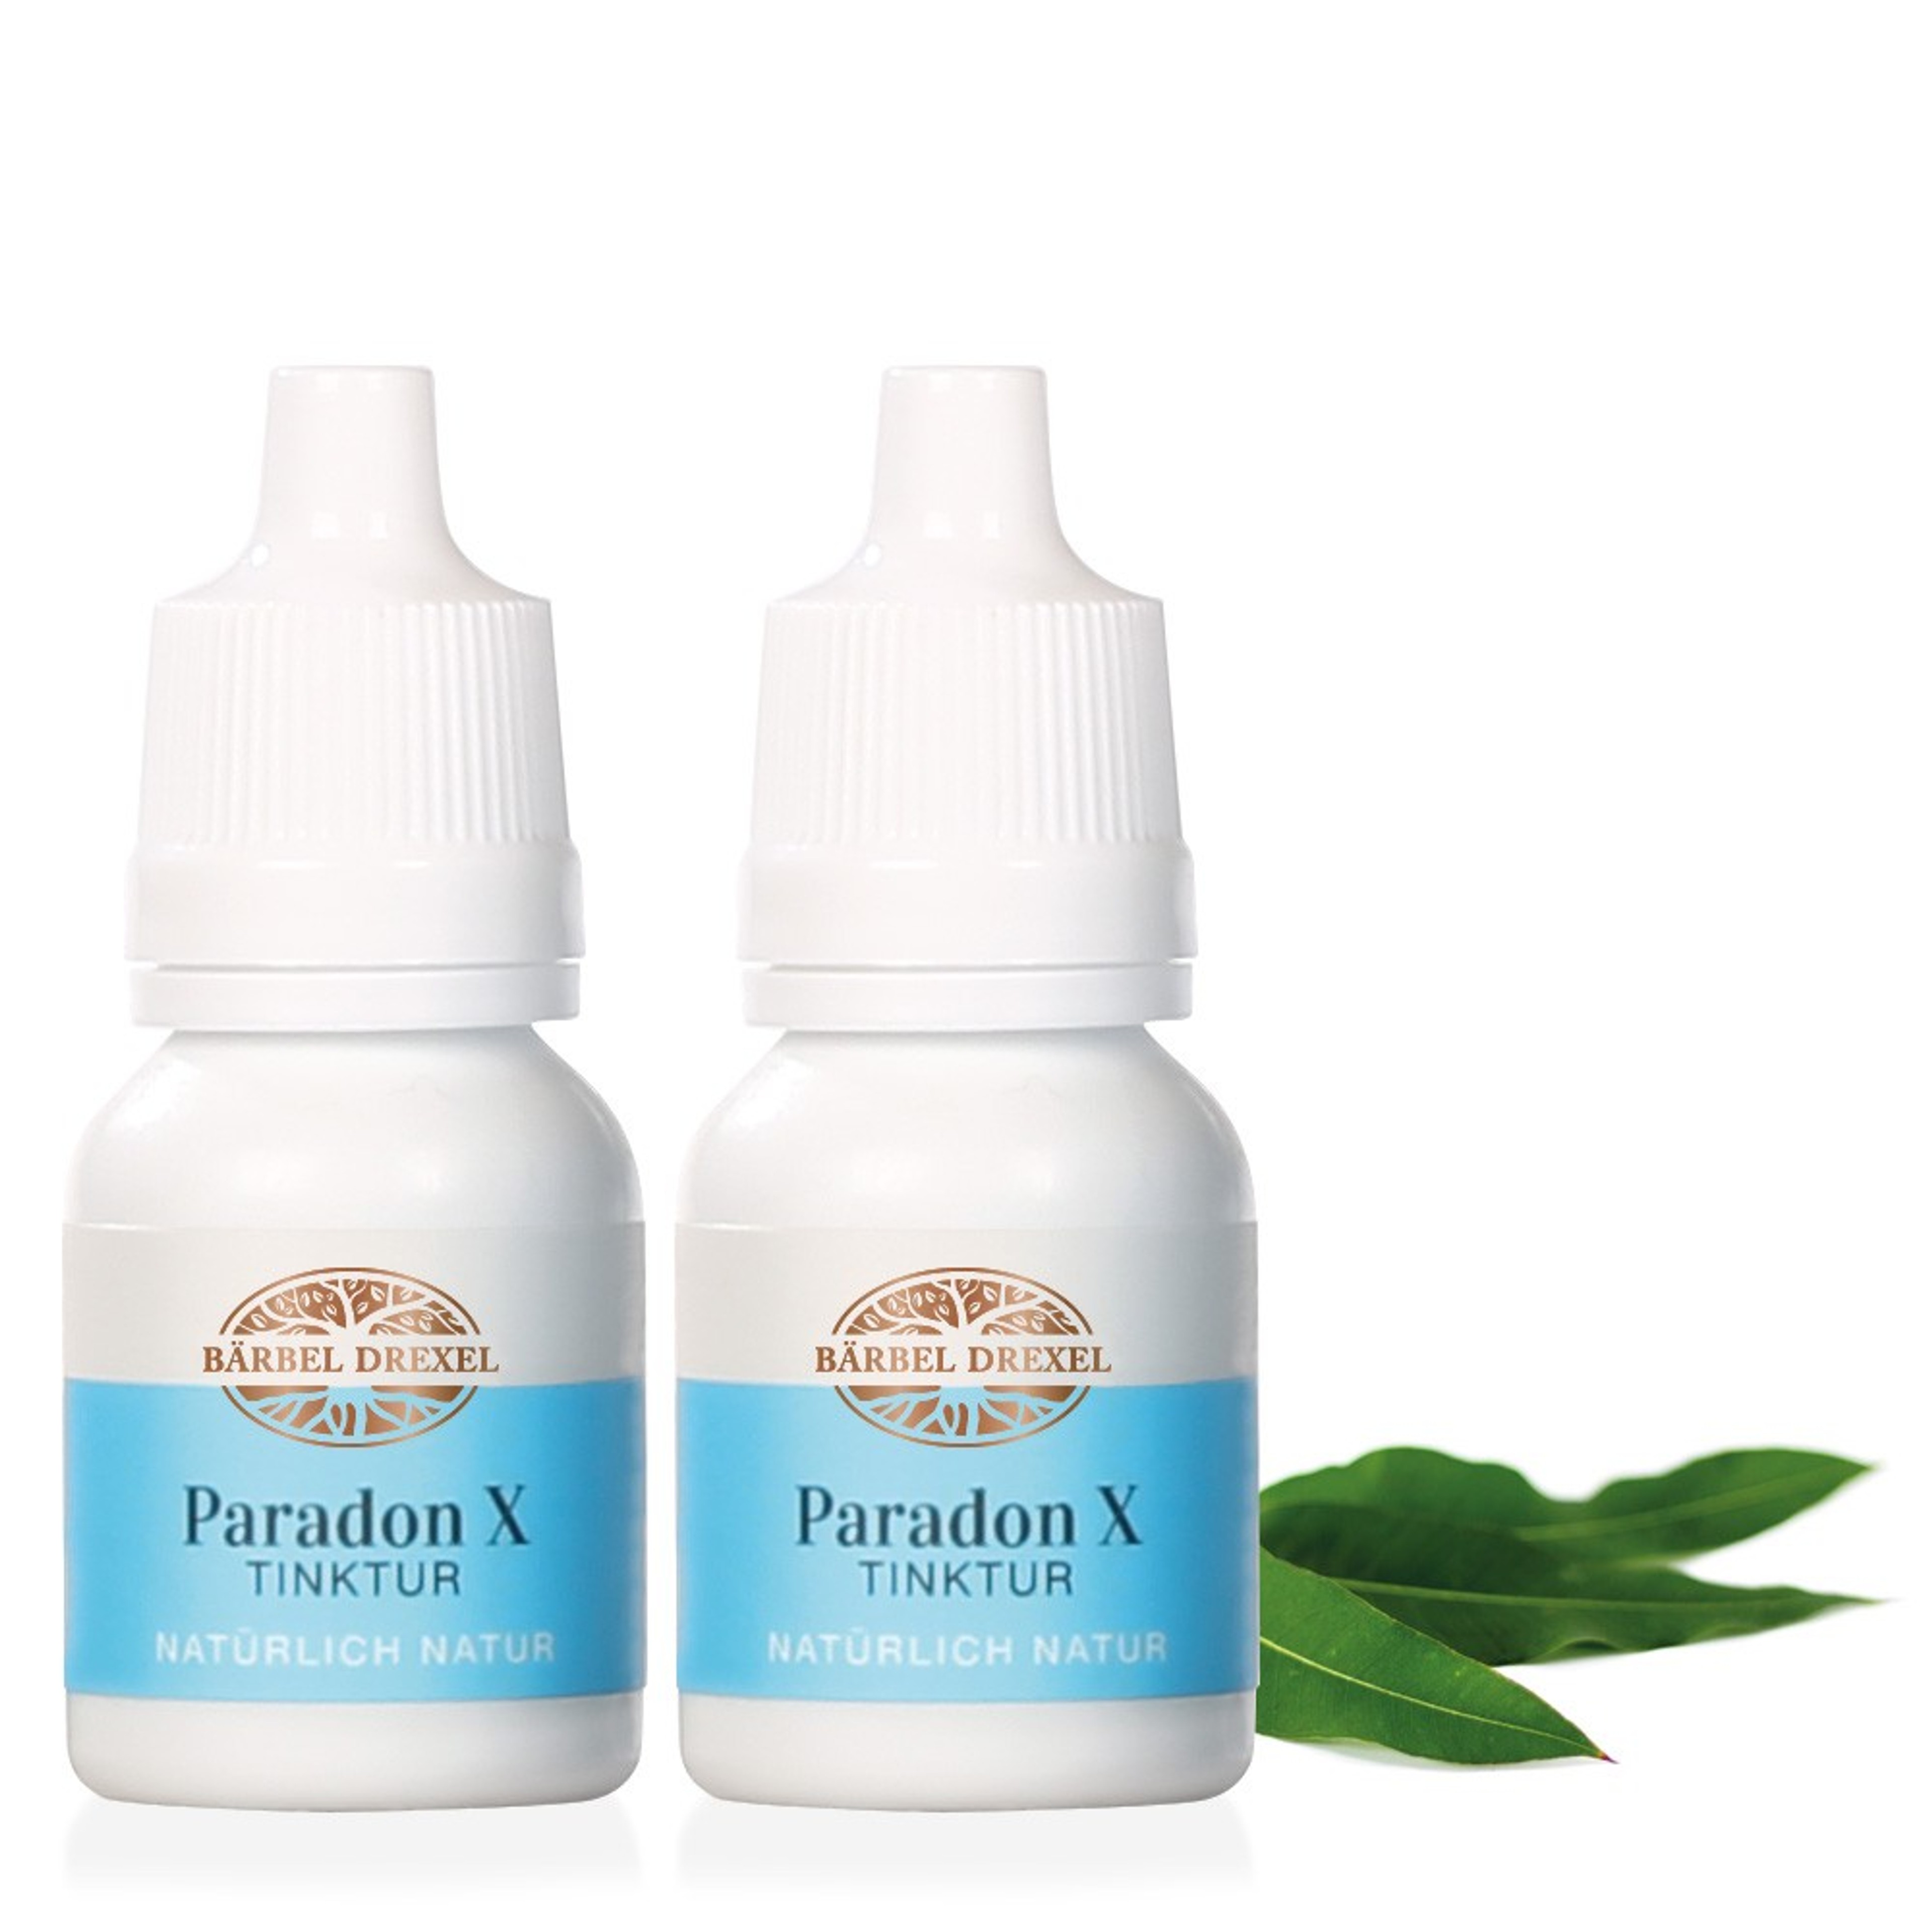 Paradon X Tinktur: Pflege für das Zahnfleisch